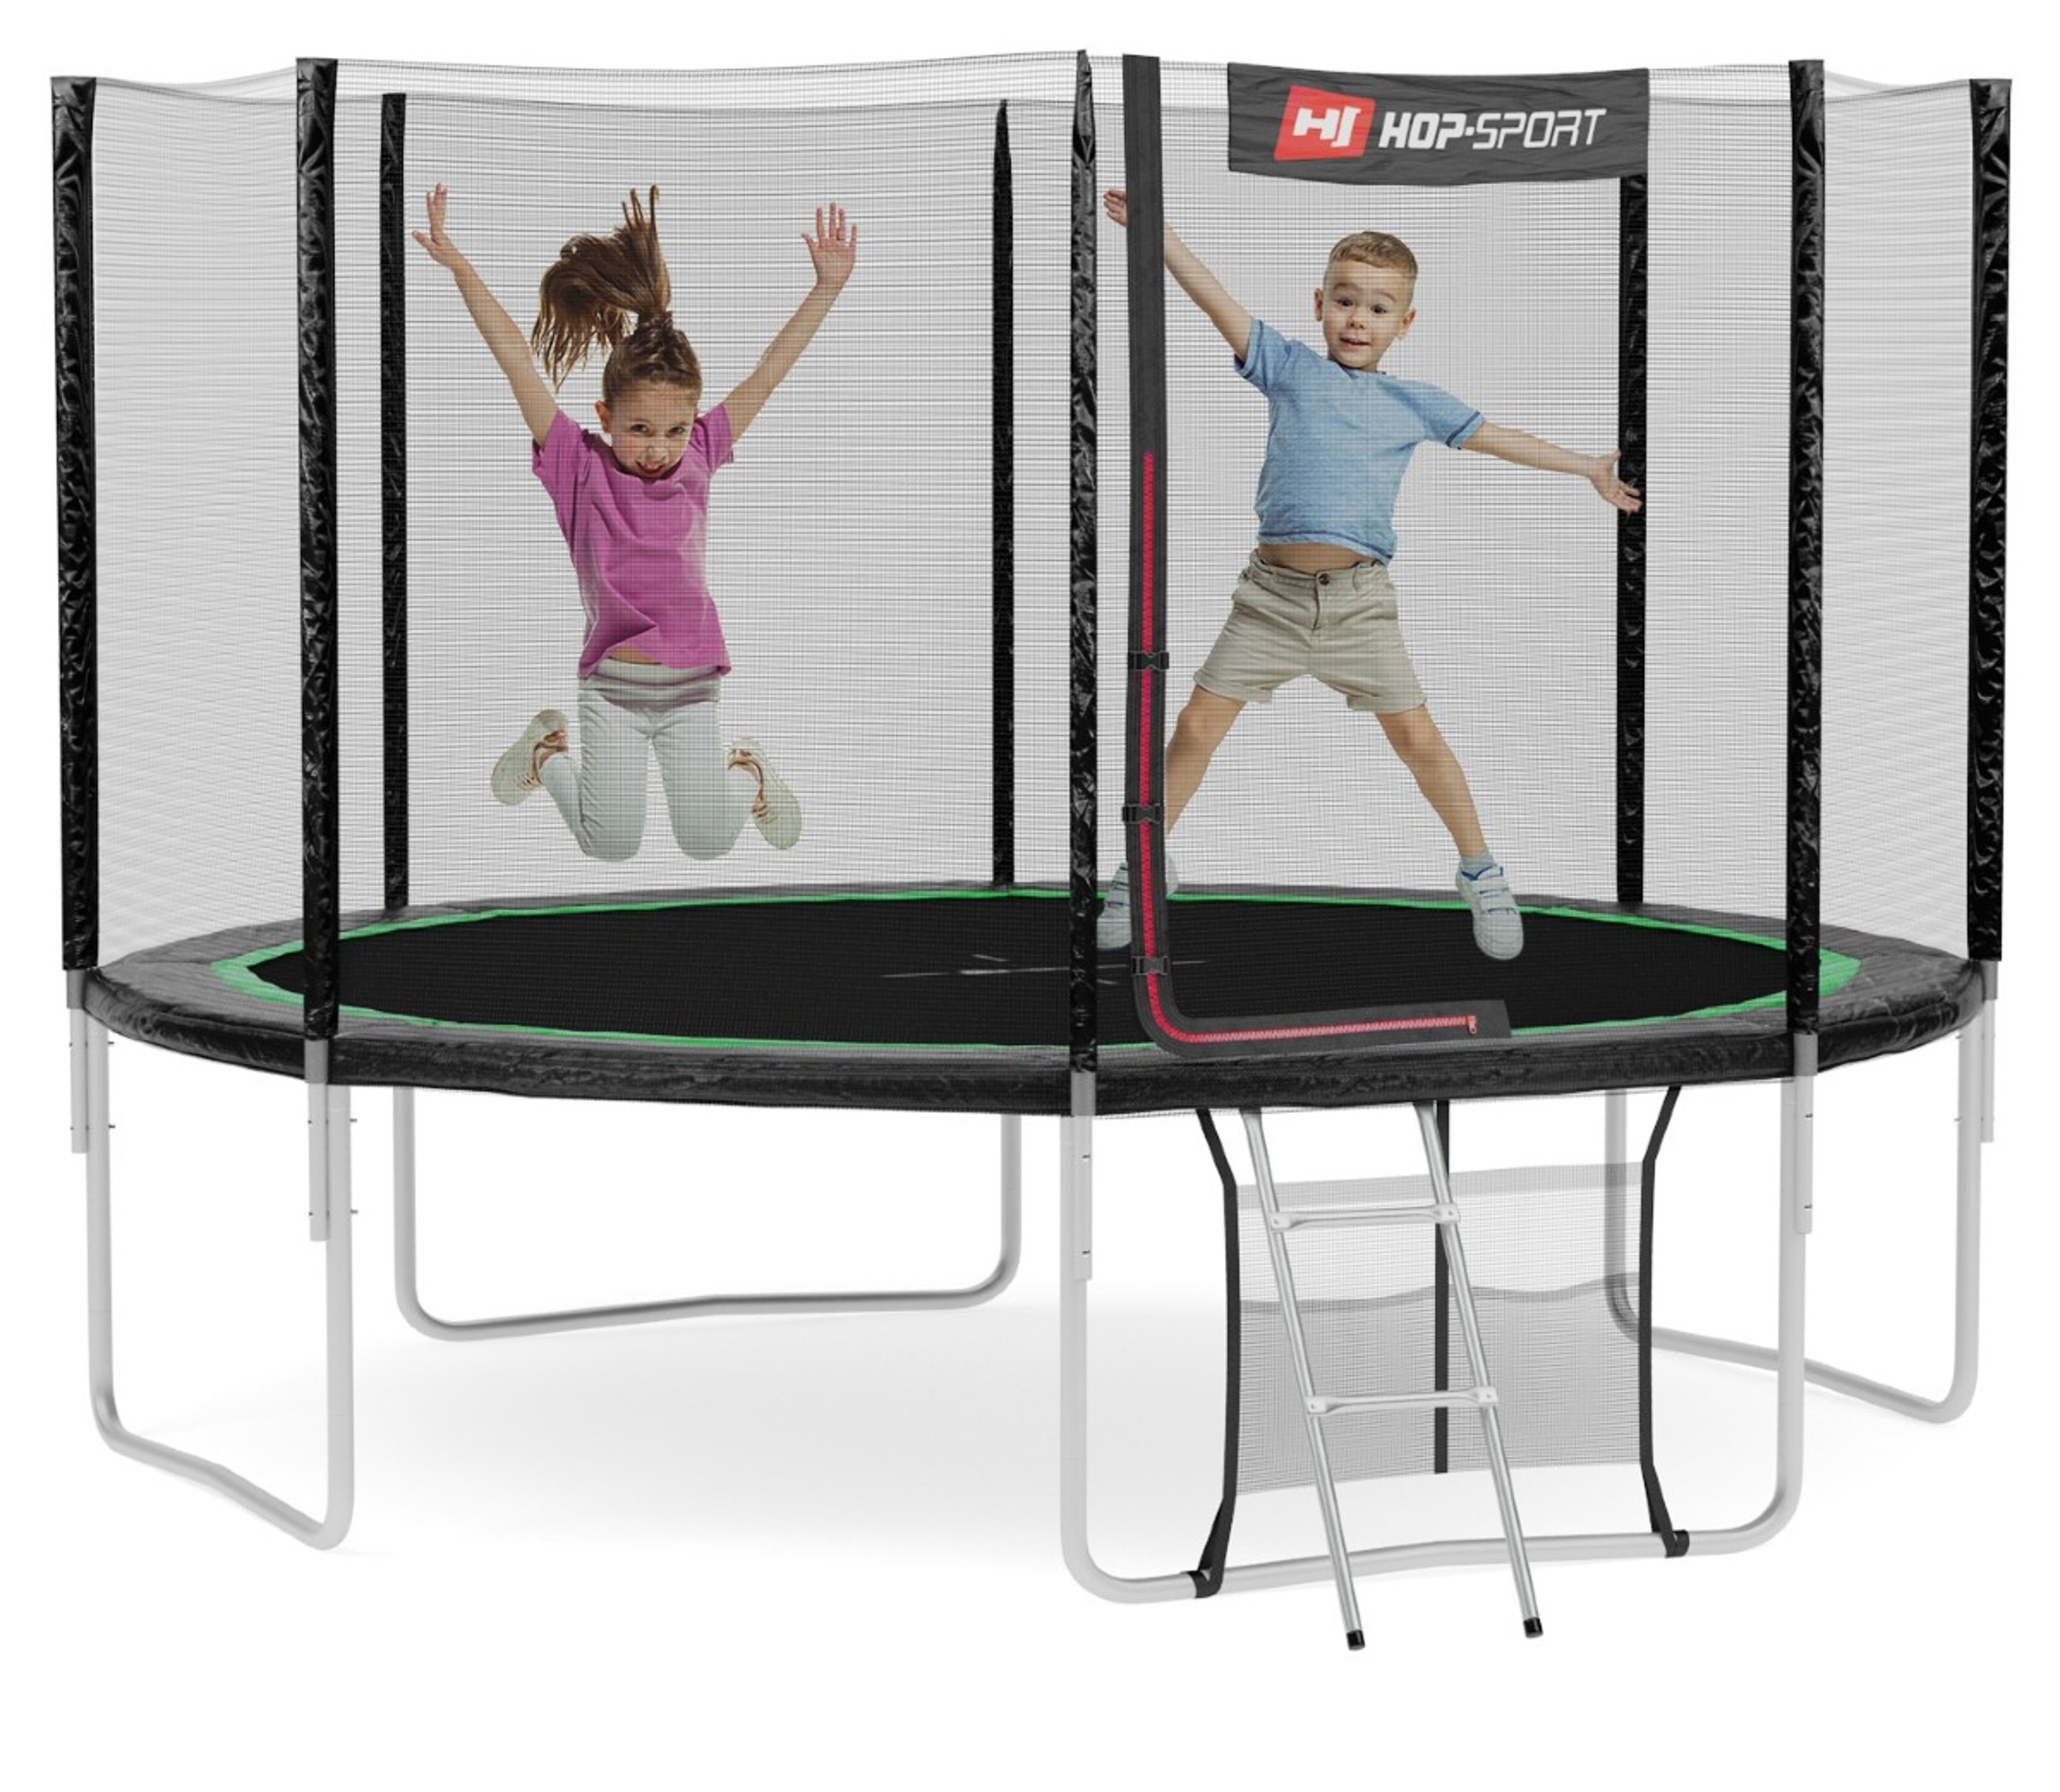 Kinder springen auf dem Trampolin von Hop-Sport